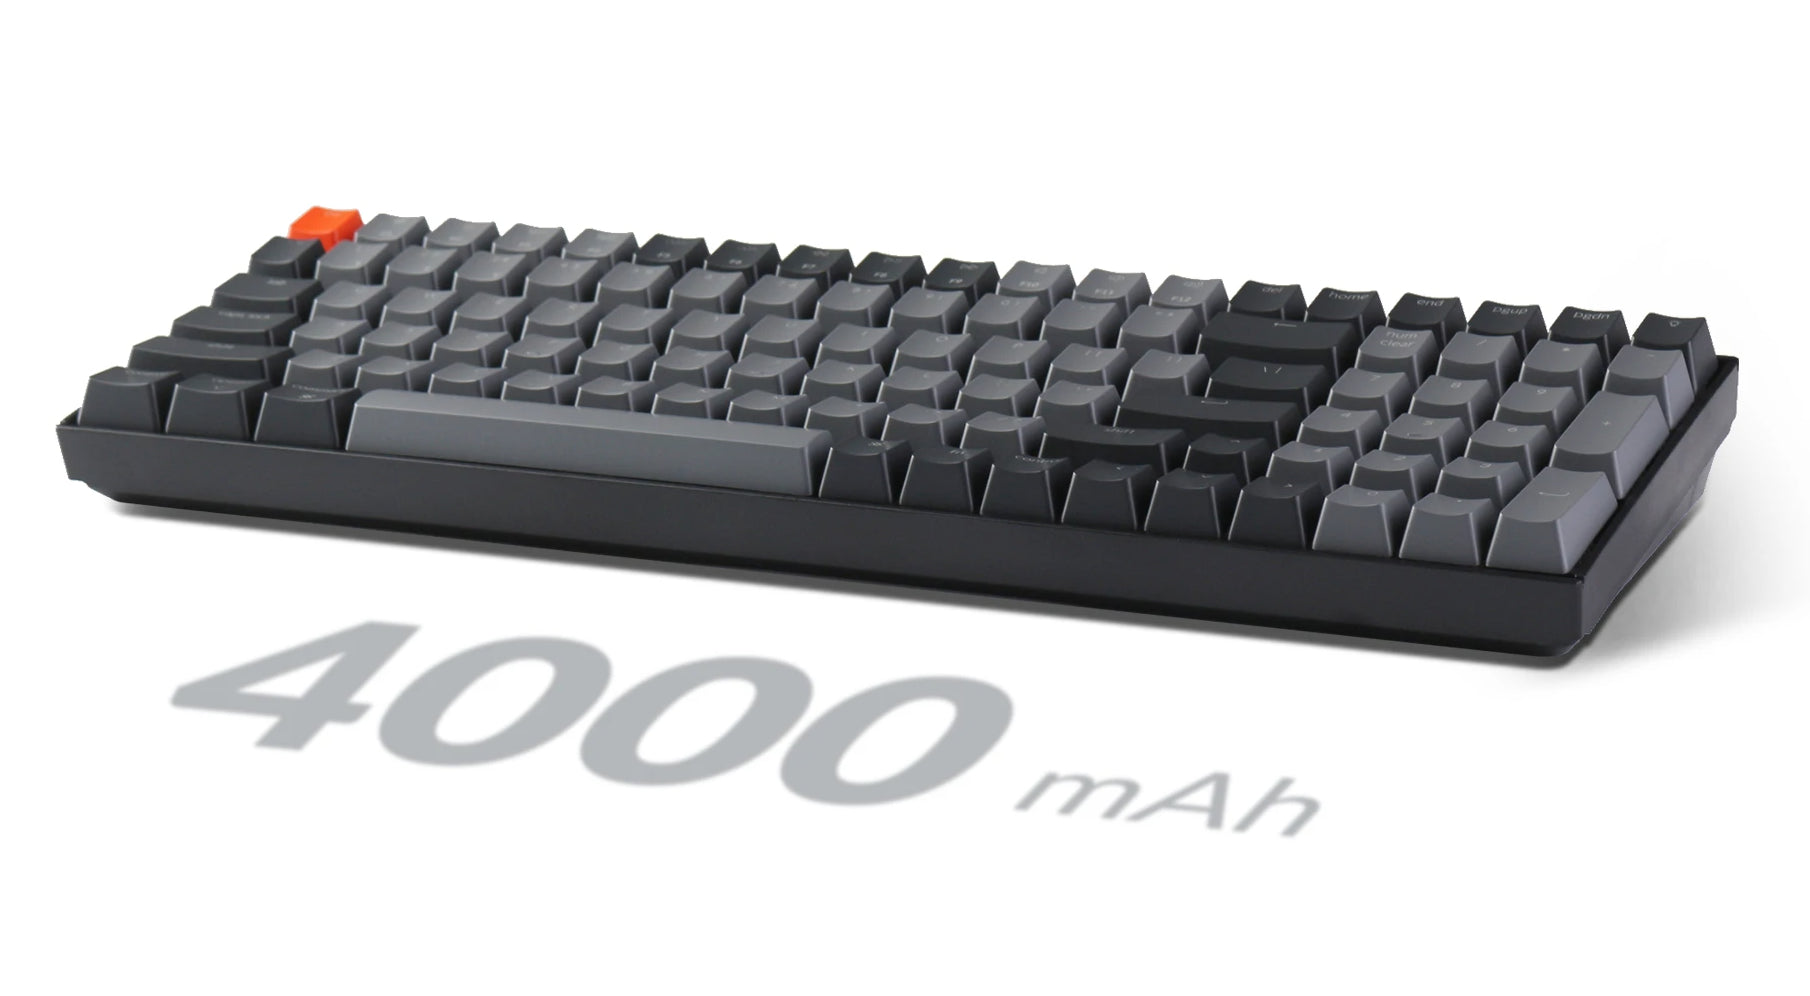 Keychron K4 Wireless Mechanical Keyboard (German ISO-DE Layout 